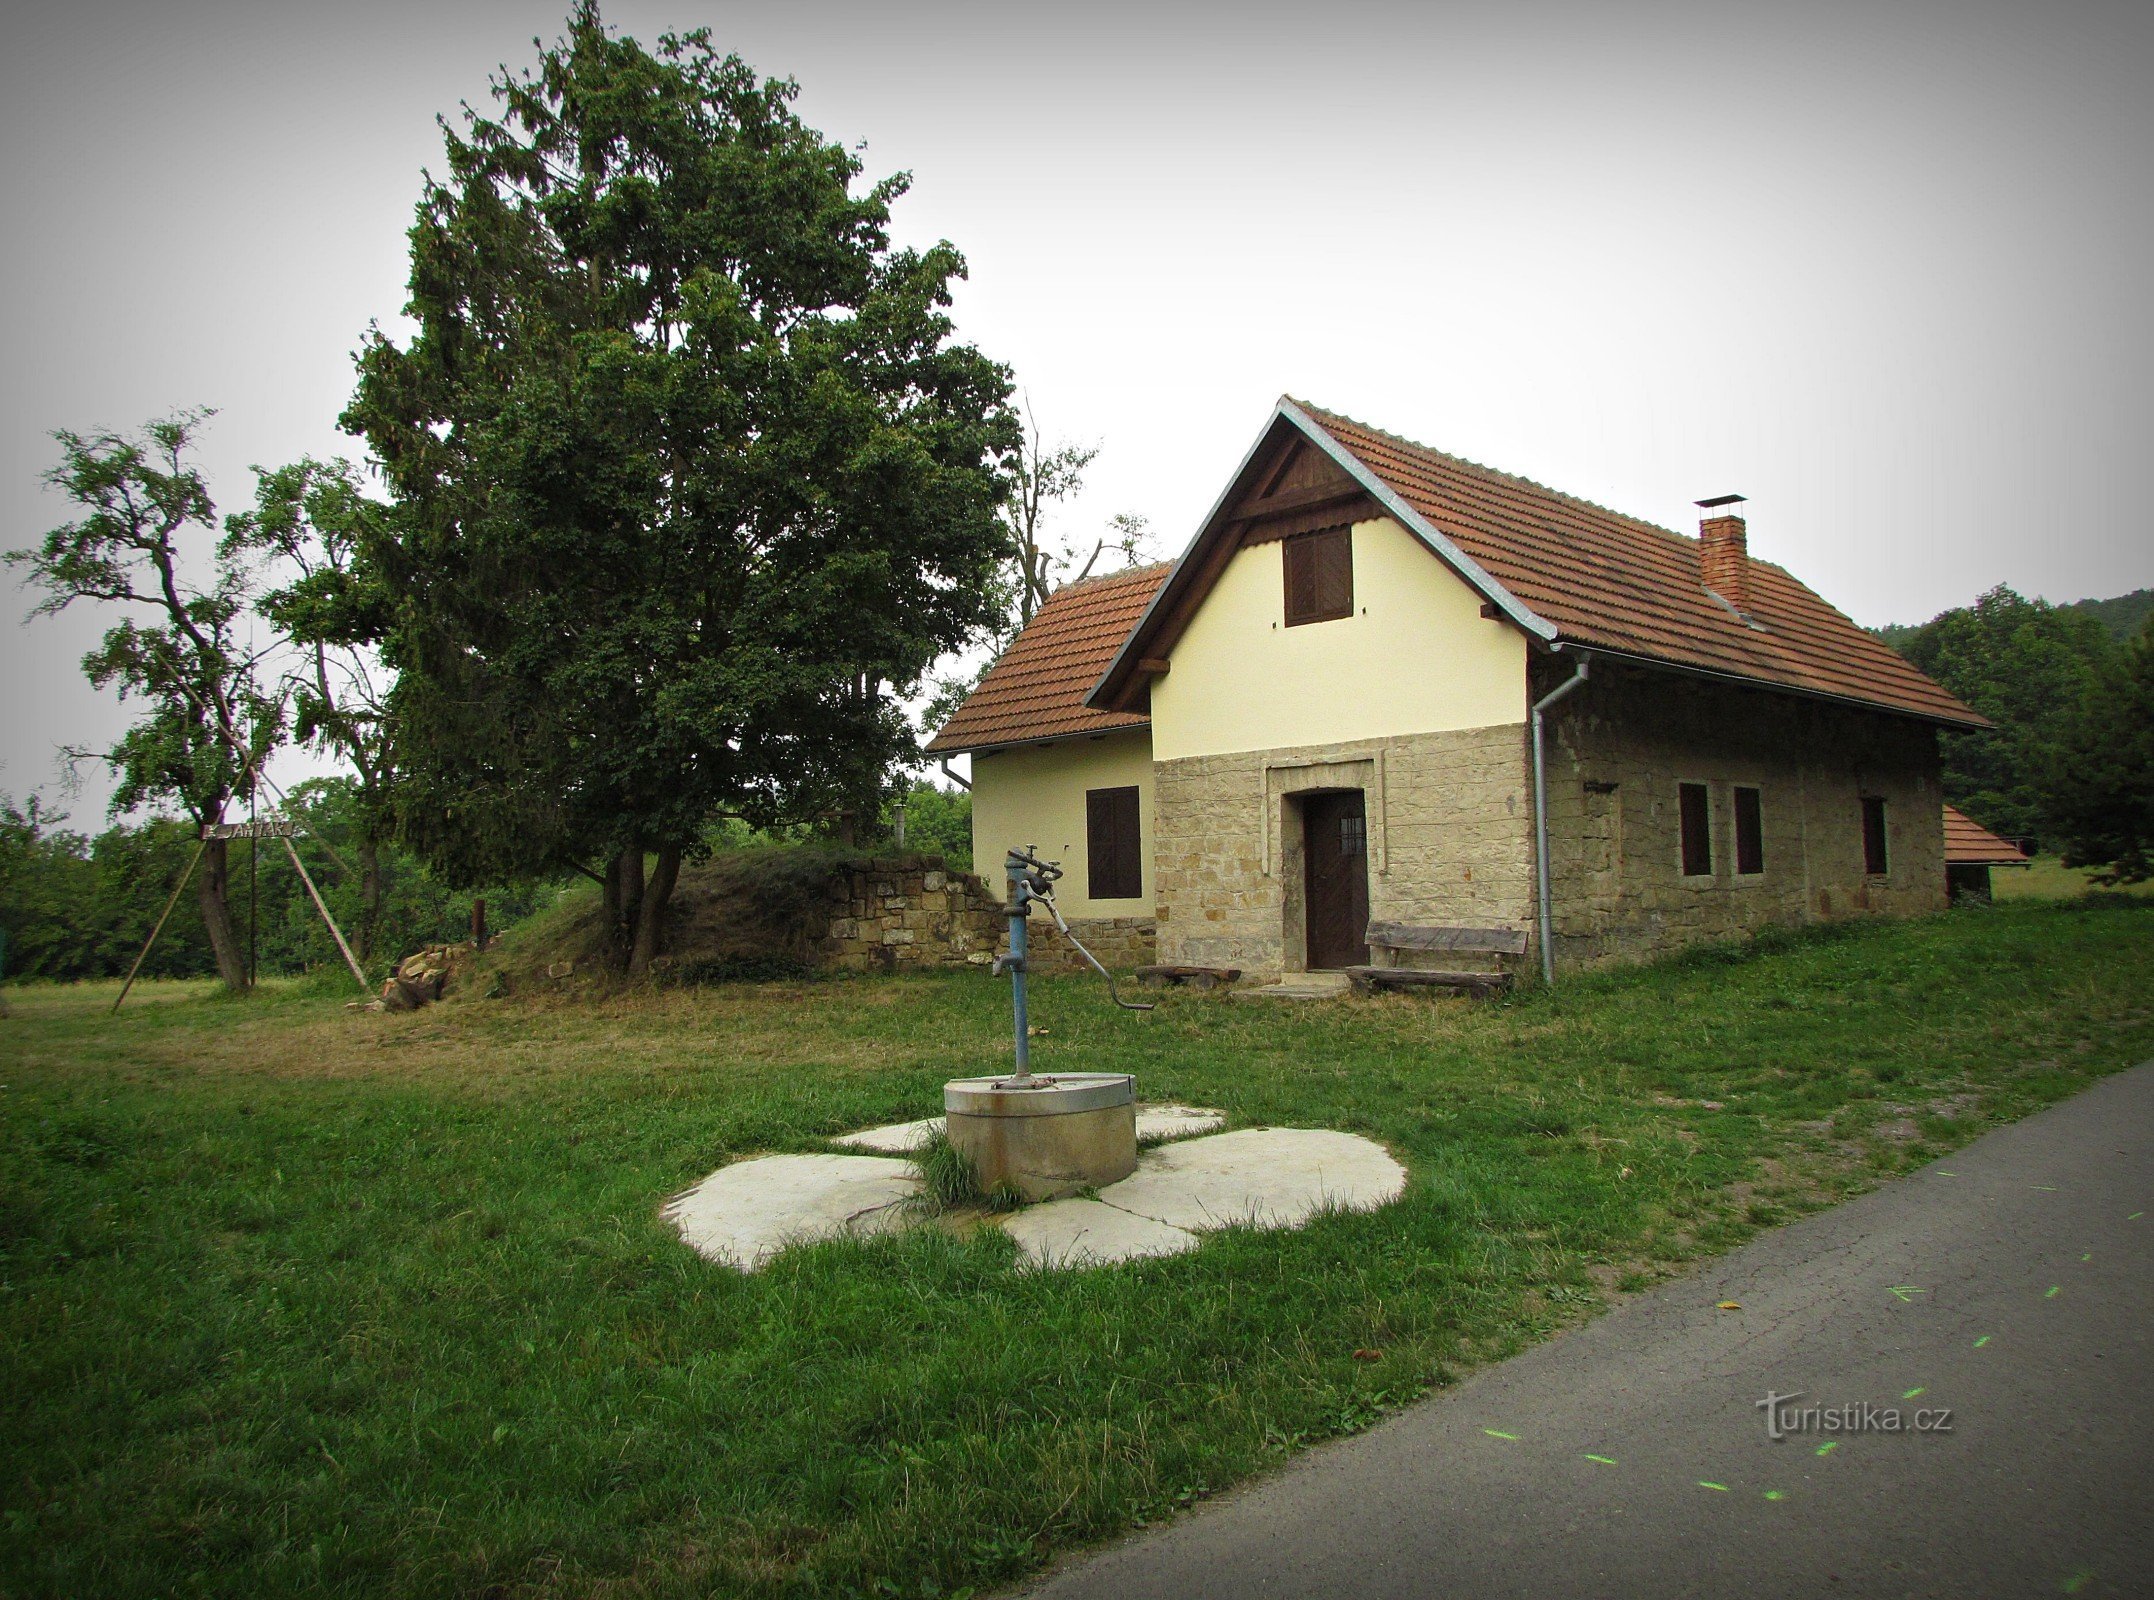 Semesterhus Jantar nära Vřesovice